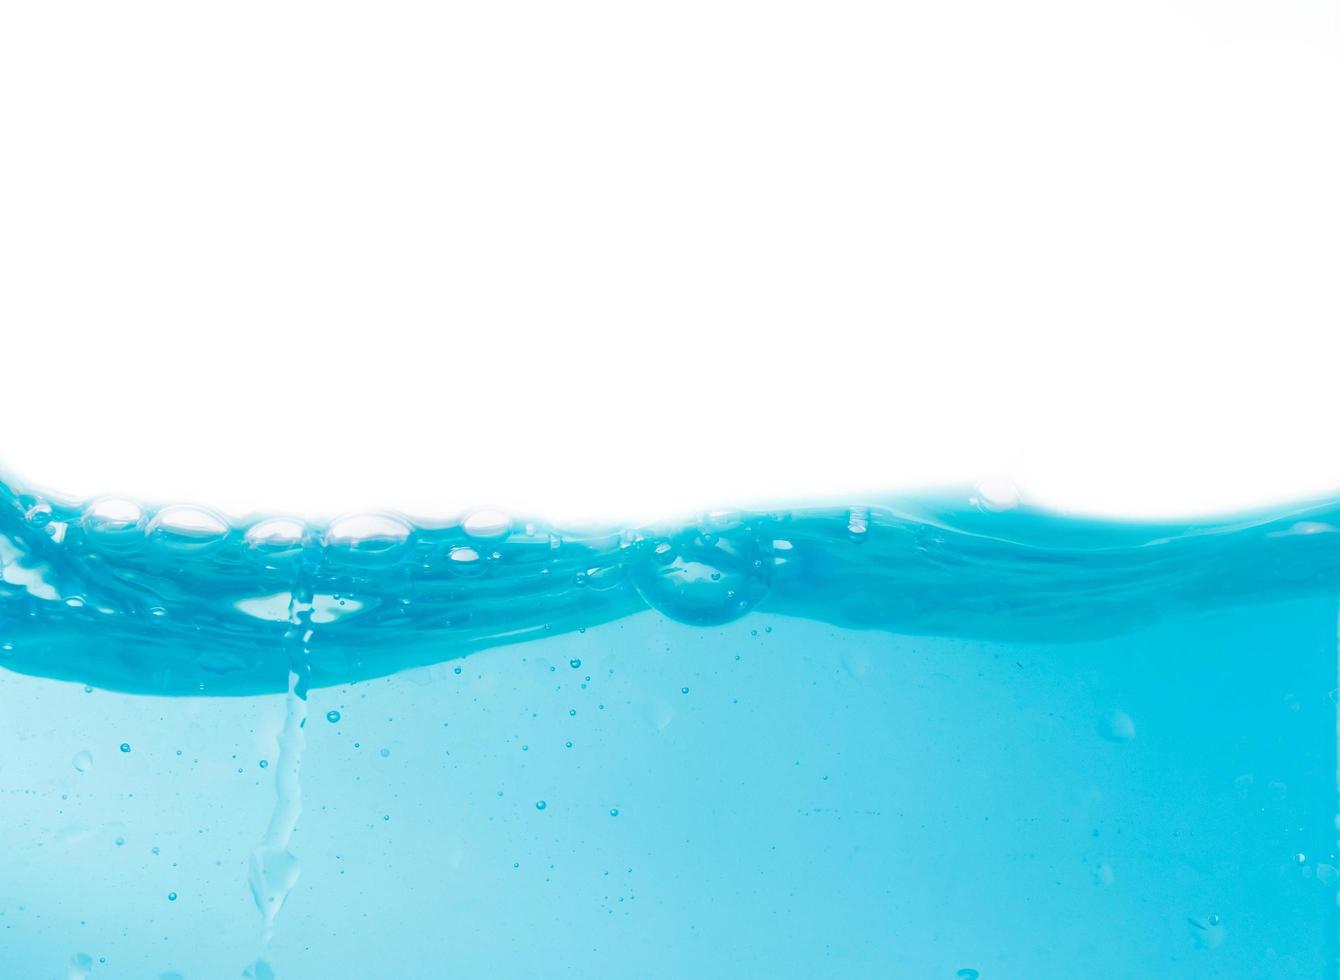 éclaboussures et bulles d'eau bleues sur fond blanc, eau bleue claire et vagues photo